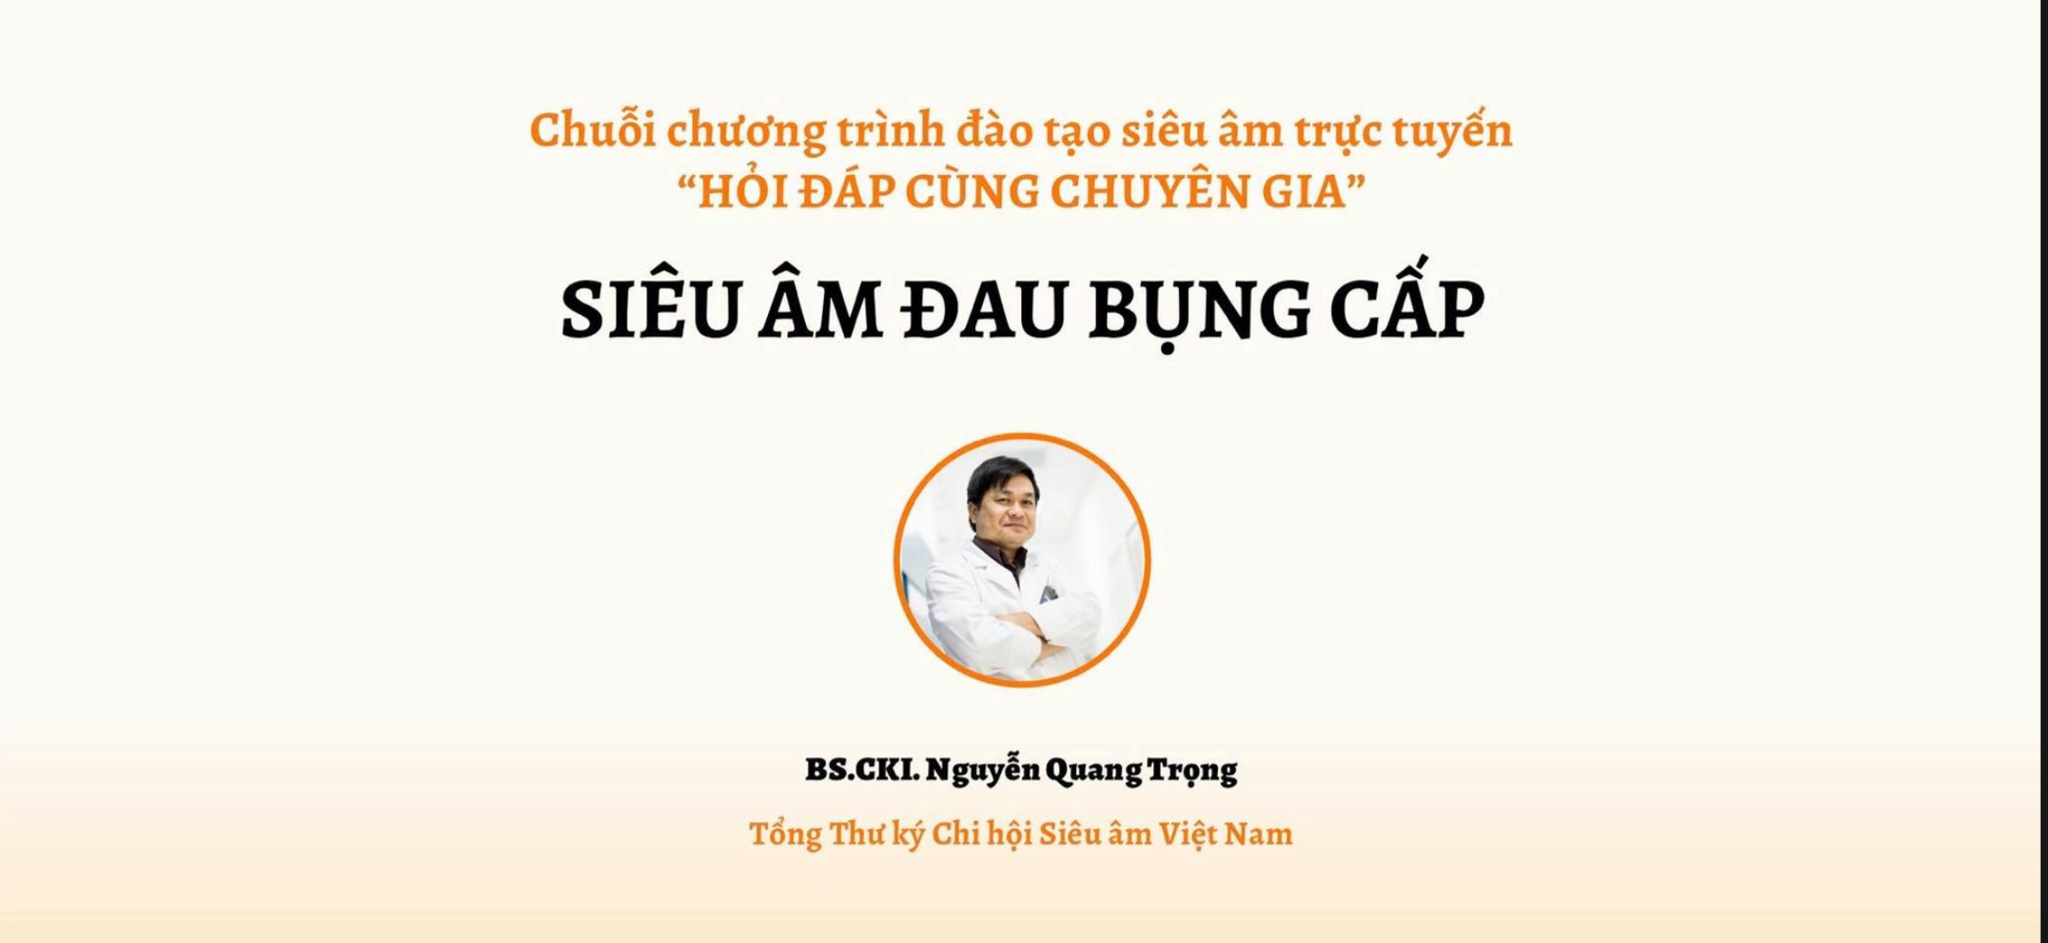 Siêu âm đau bụng cấp - BSCKI. Nguyễn Quang Trọng - Hỏi đáp cùng chuyên gia